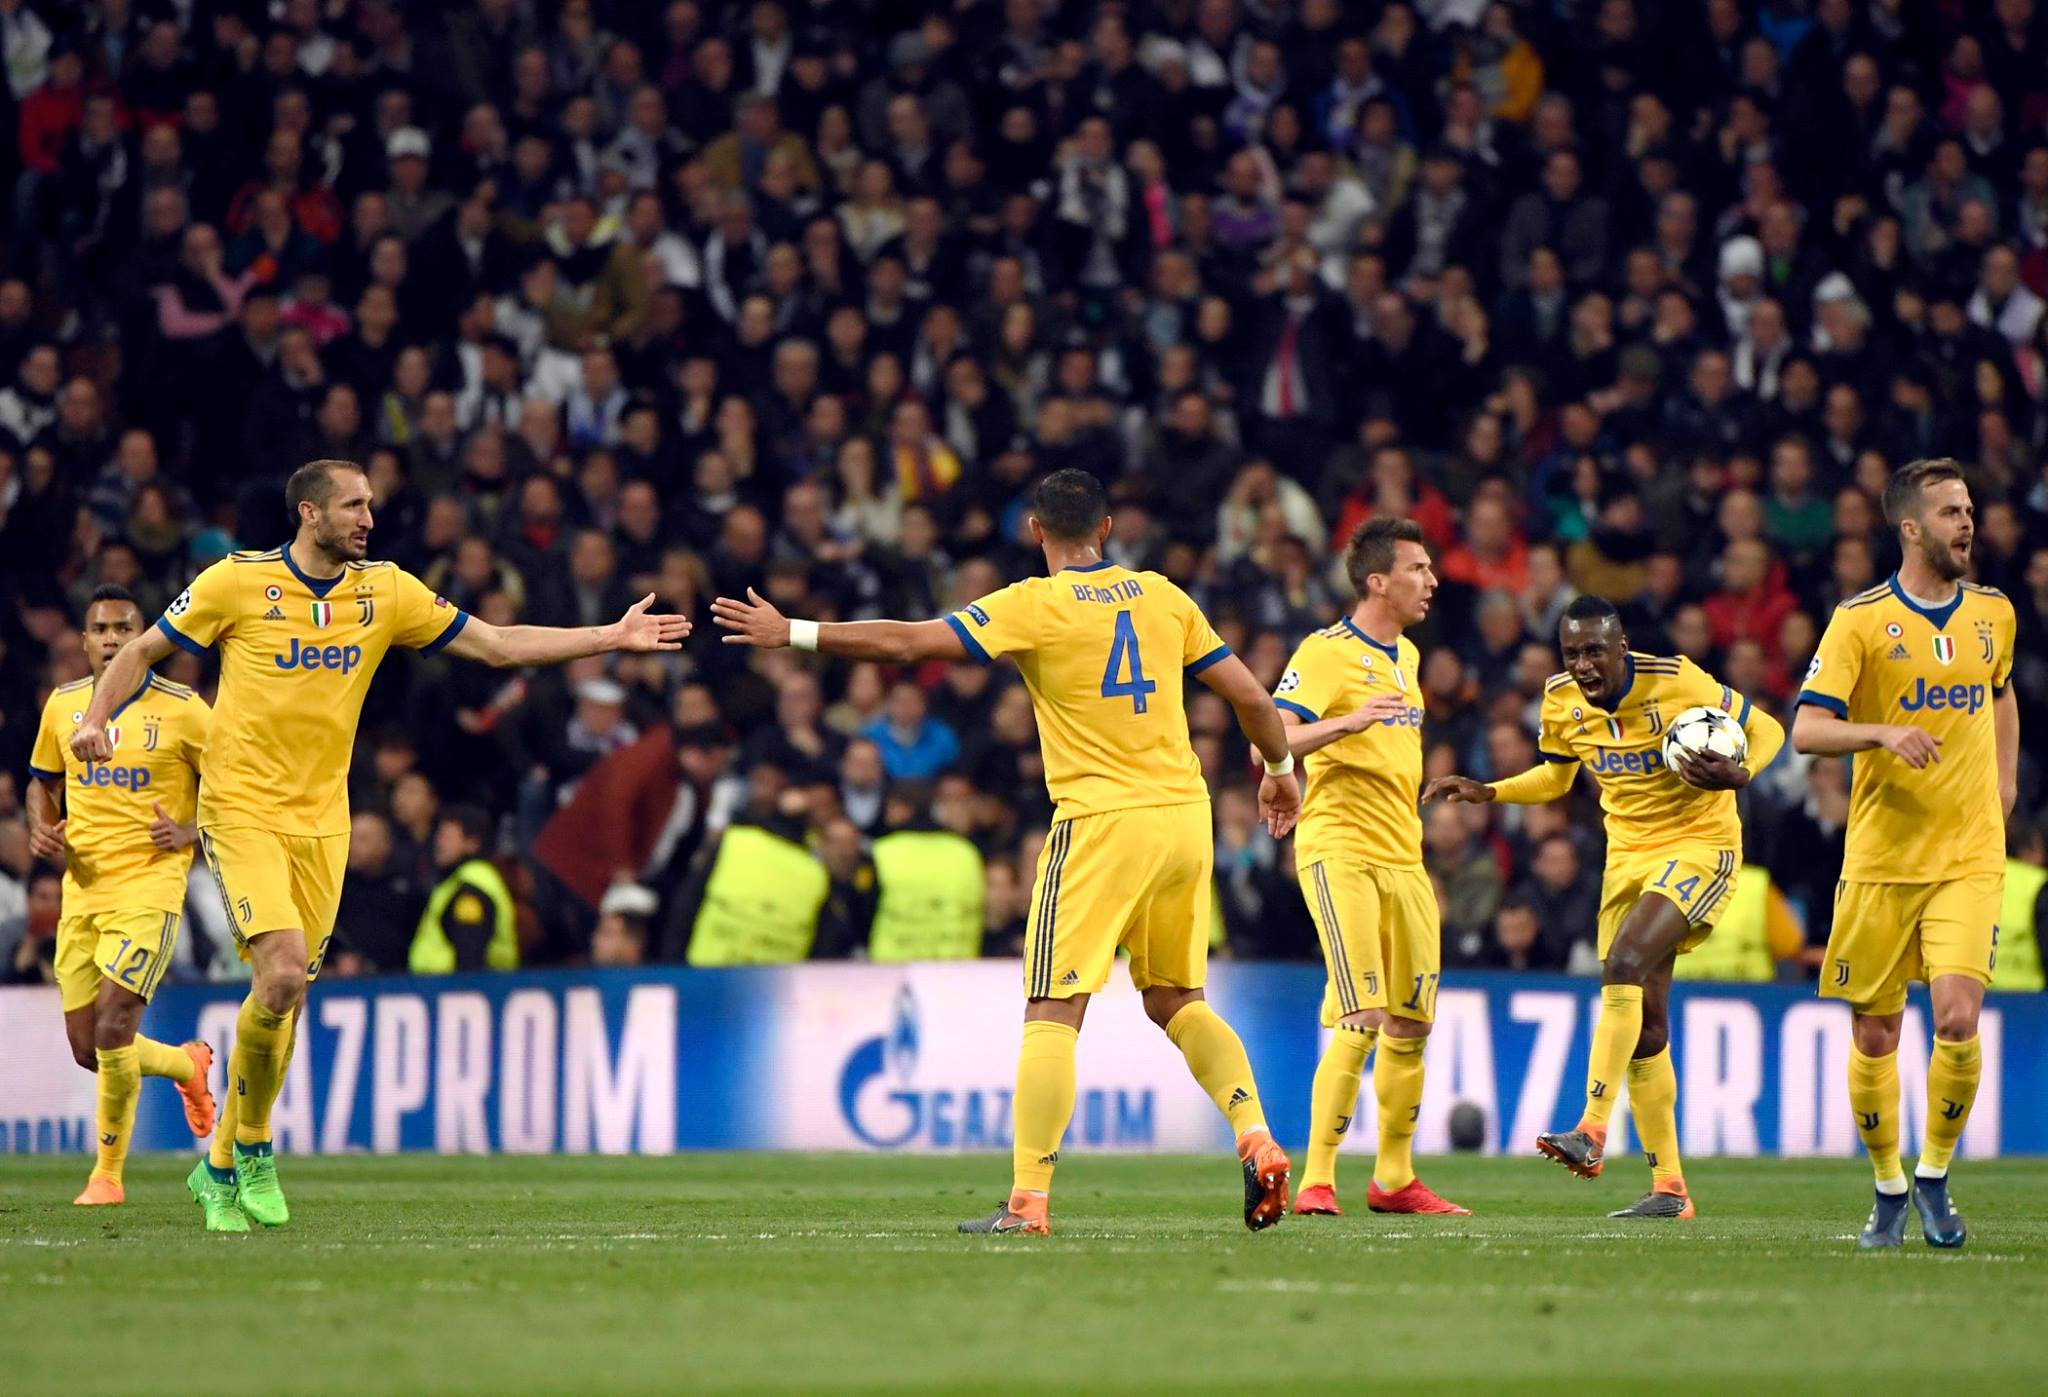 Kết quả Real Madrid 1-3 Juventus: Ronaldo giúp Real giành vé vào bán kết C1 trong sợ hãi